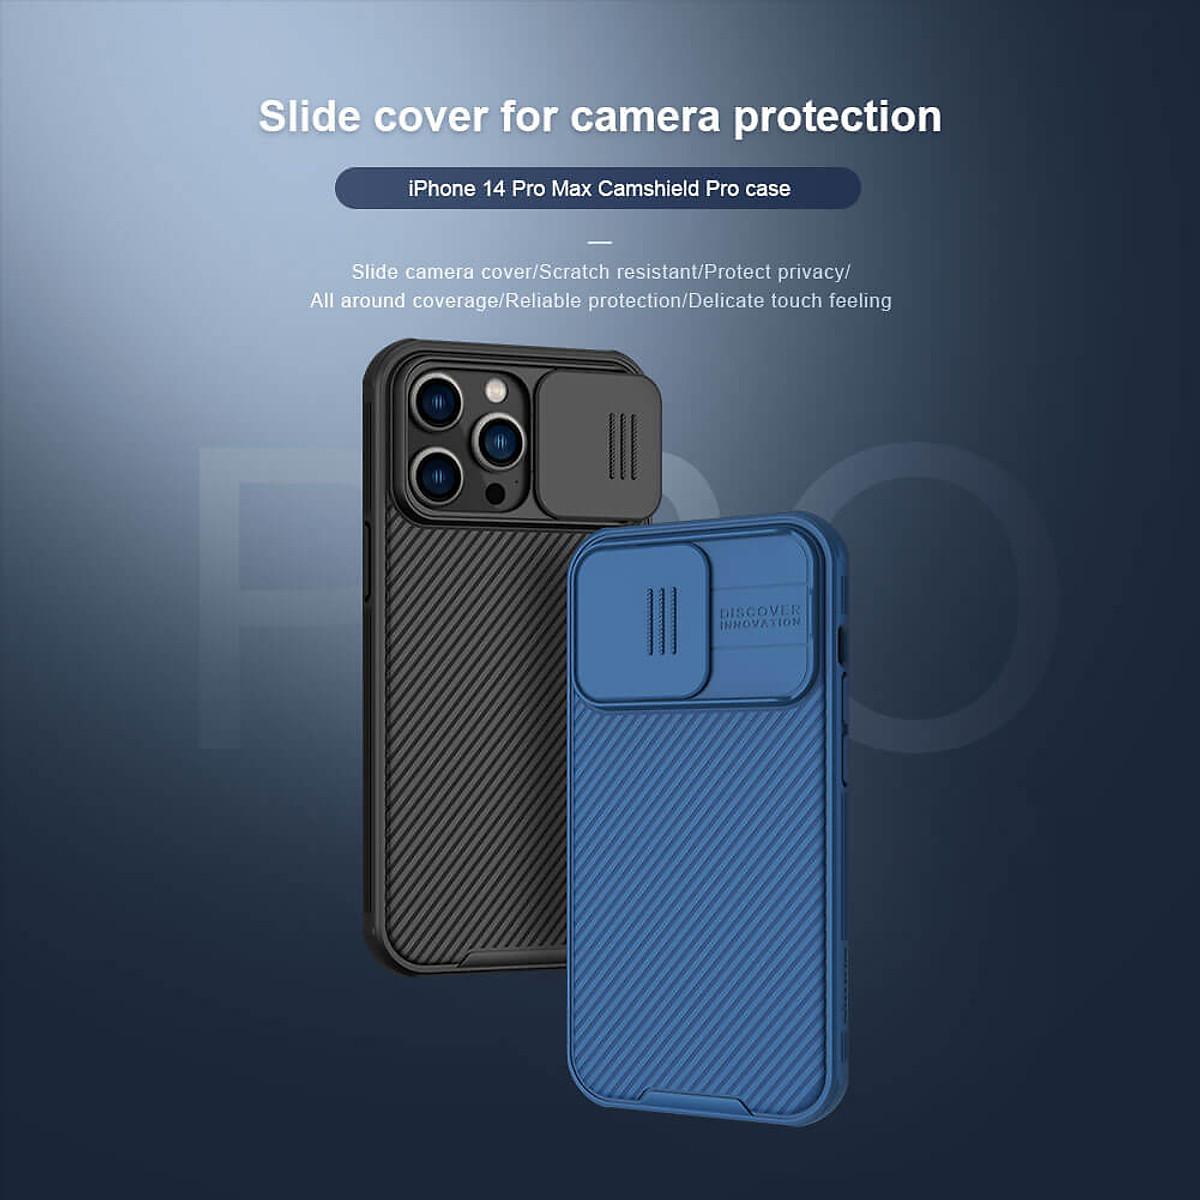 Ốp lưng chống sốc cho Iphone 14 Pro , 14 Pro Max bảo vệ Camera hiệu Nillkin Camshield Pro chống sốc cực tốt, chất liệu cao cấp, có khung & nắp đậy bảo vệ Camera - Hàng chính hãng